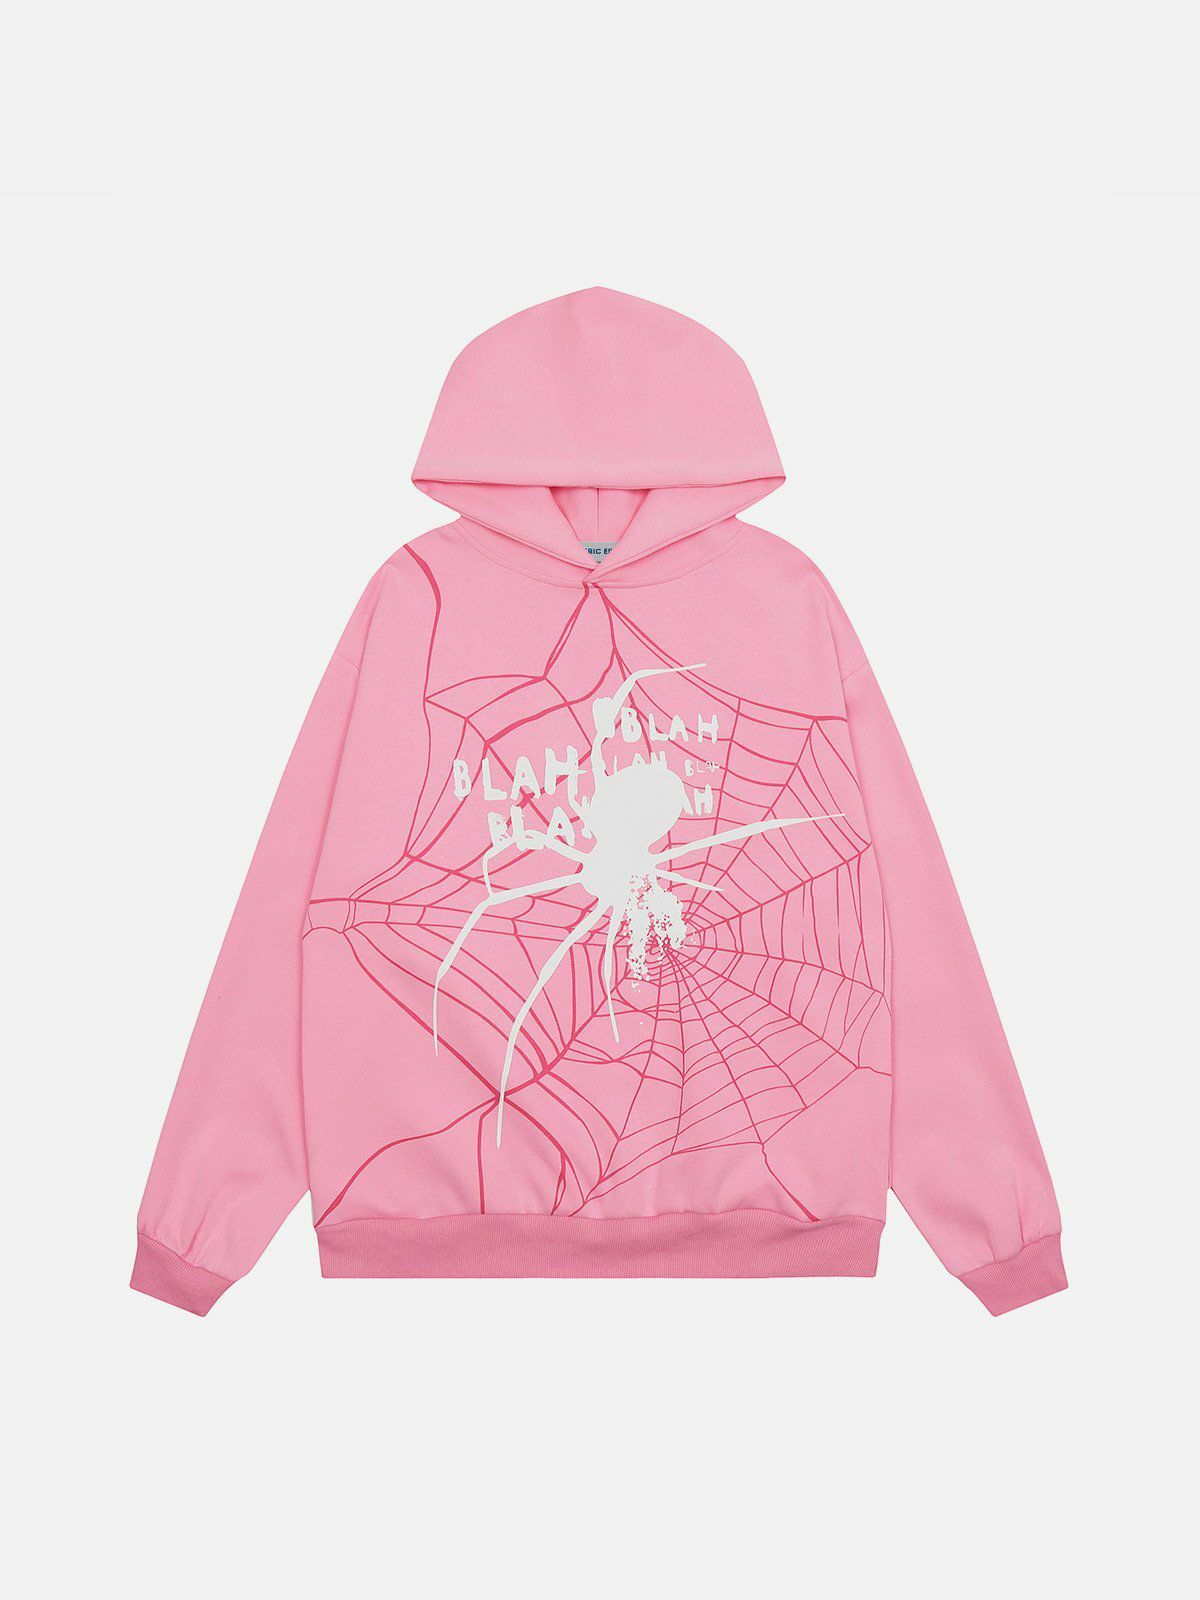 spider shadow hoodie edgy & urban streetwear 3372